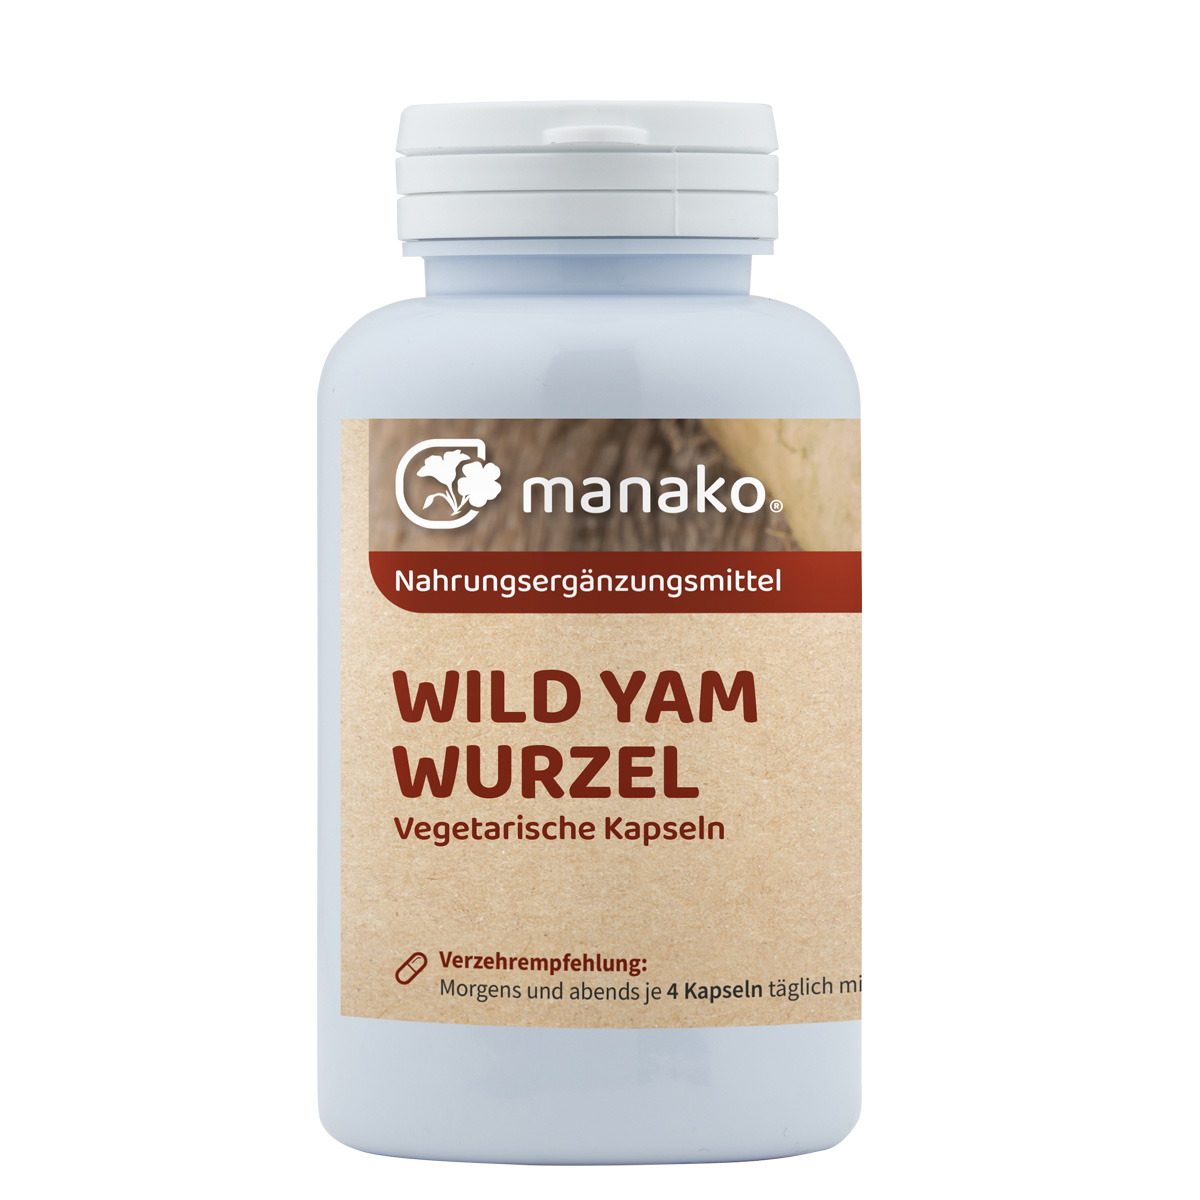 manako Wild Yam Wurzel vegetarische Kapseln, 120 Stück, Dose a 54 g